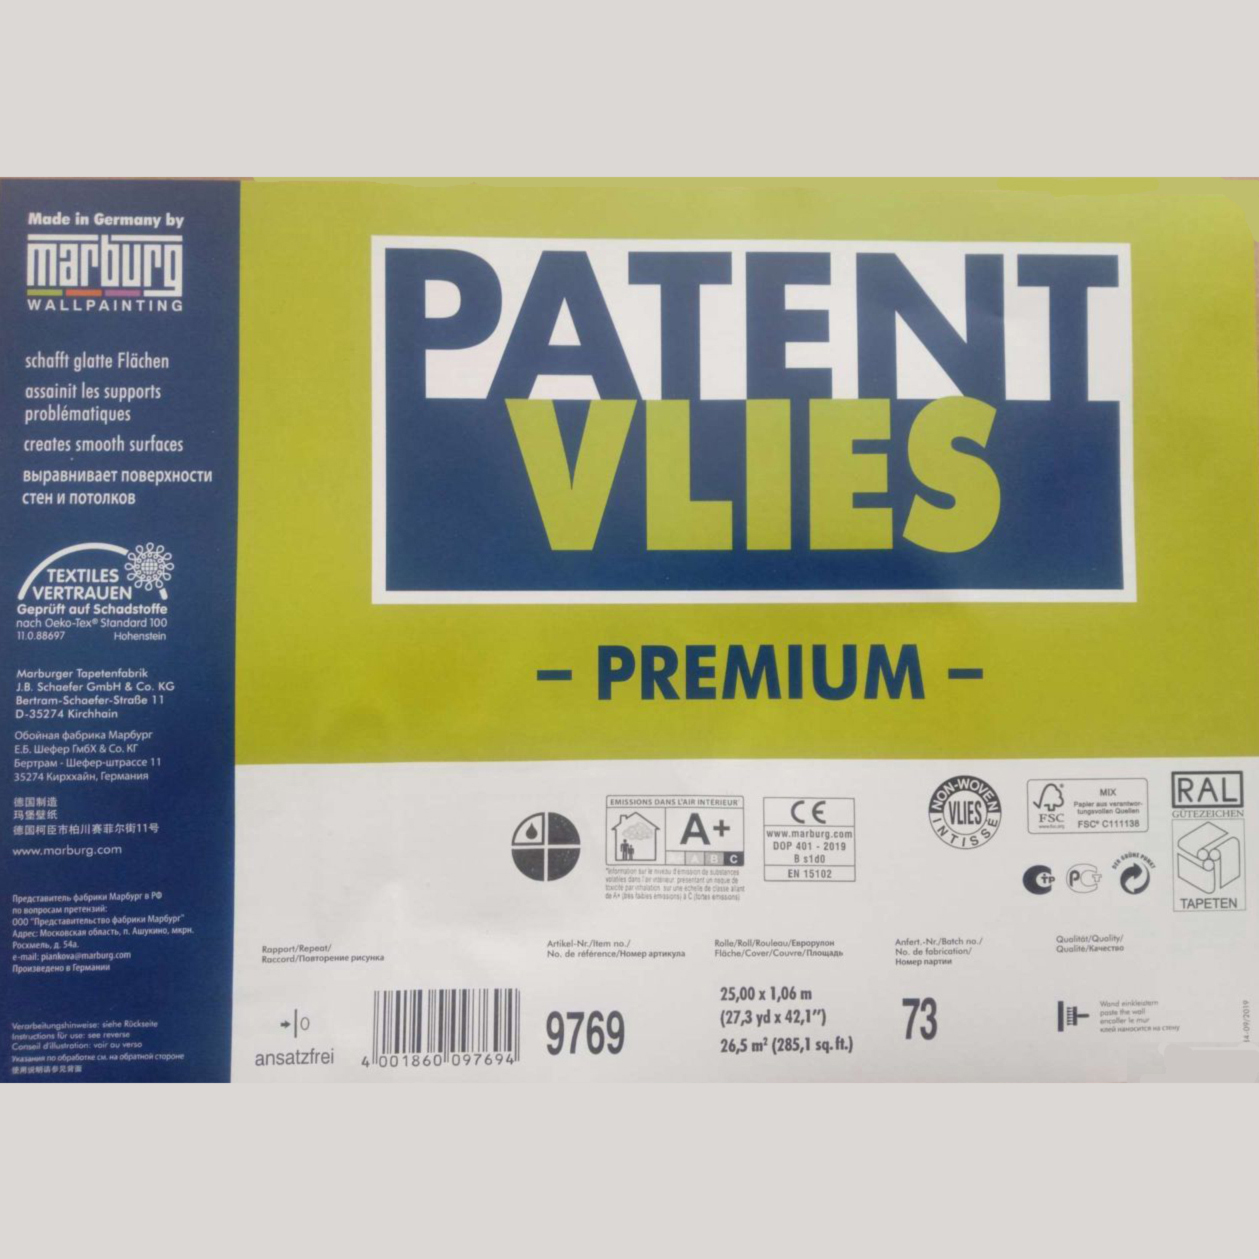 Купить обои под покраску Marburg Patent Vlies 9769R малярный флизелин (150  г. м. кв.) — 5185 руб